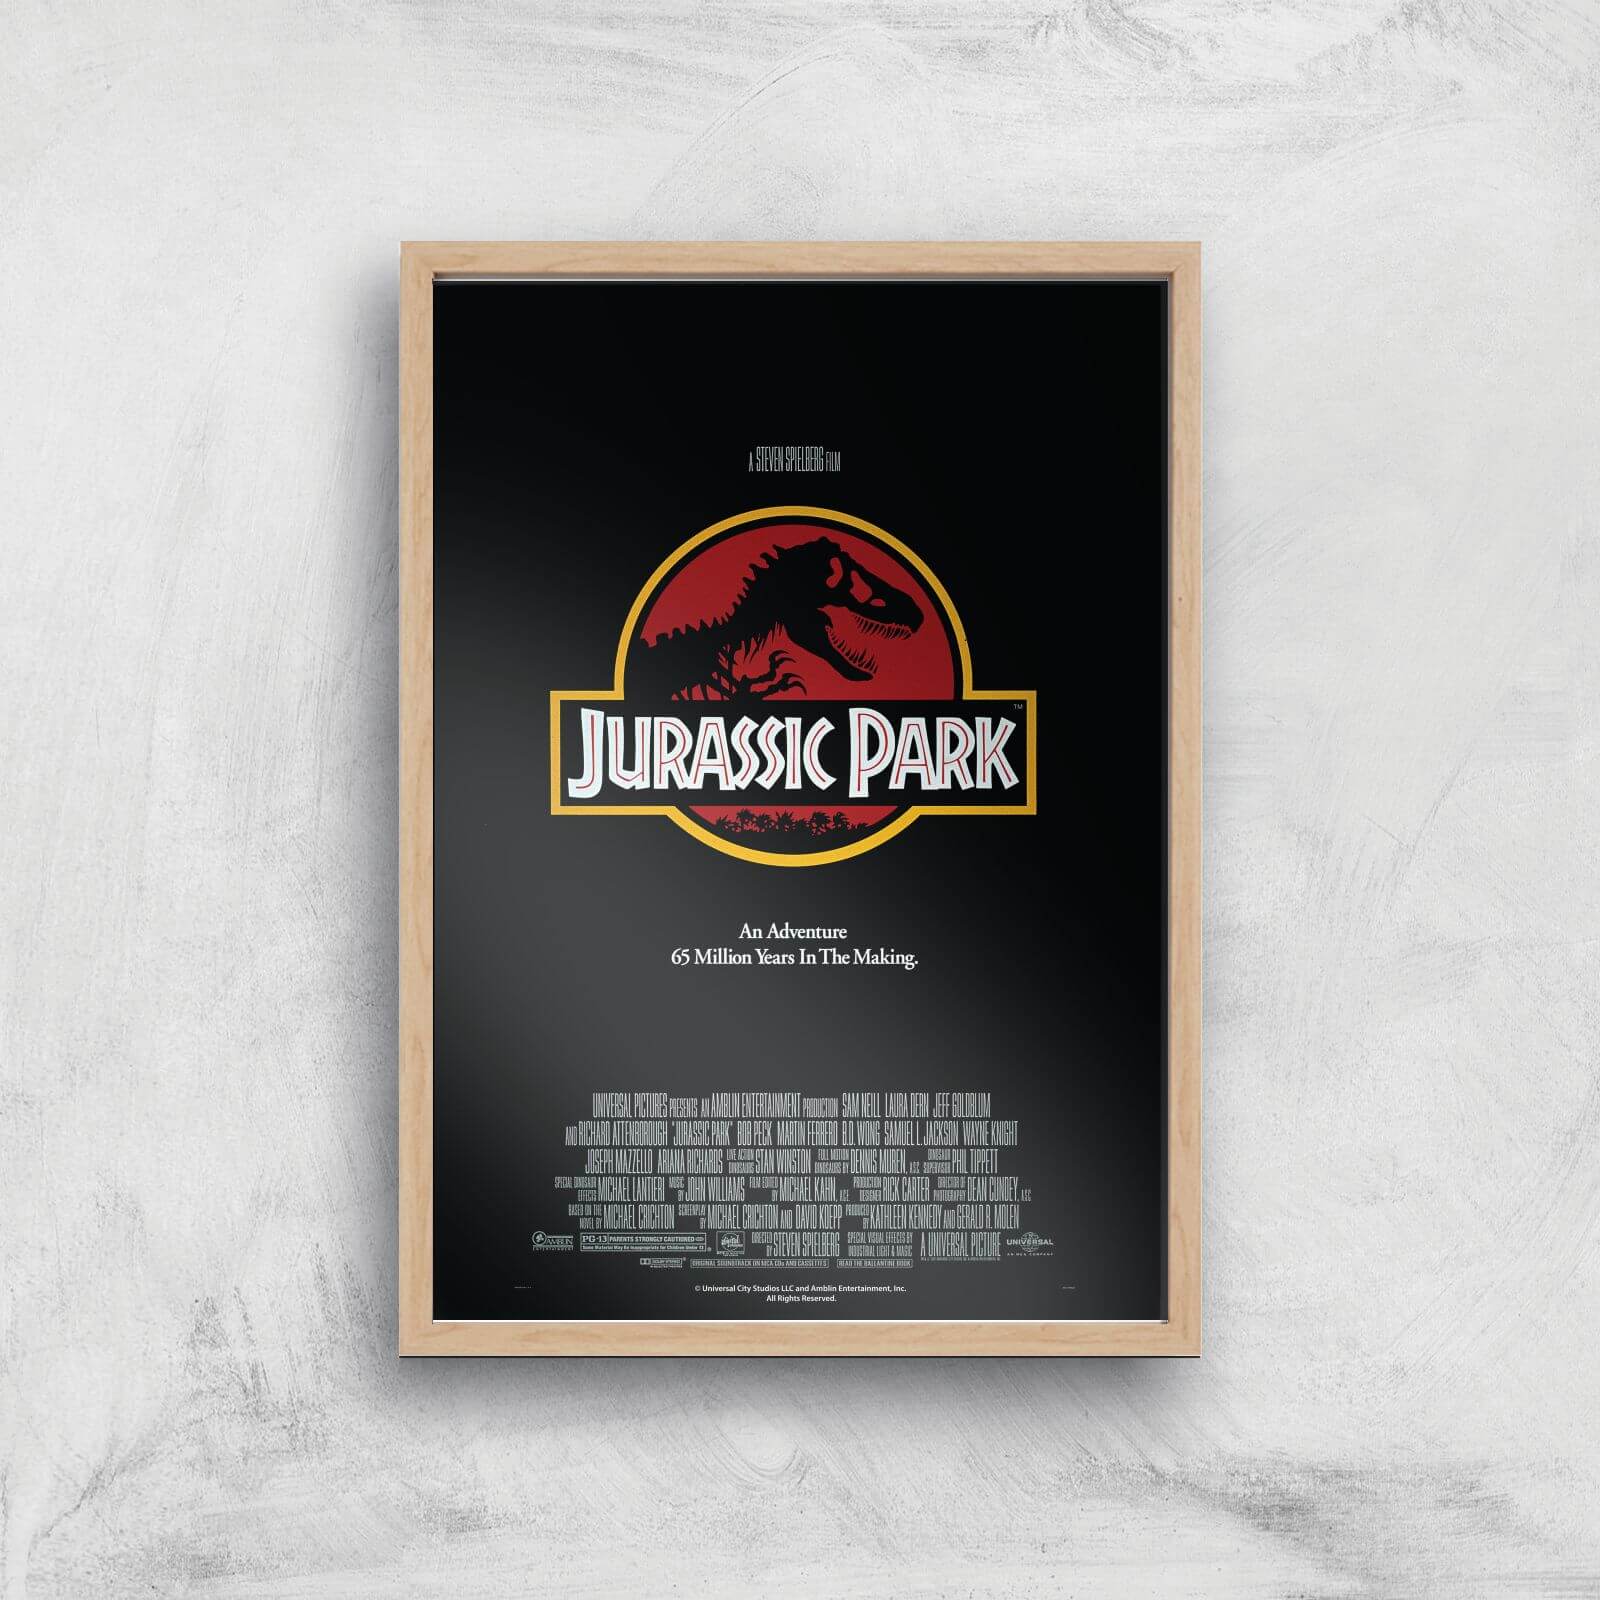 Jurassic Park Giclee Art Print - A2 - Wooden Frame